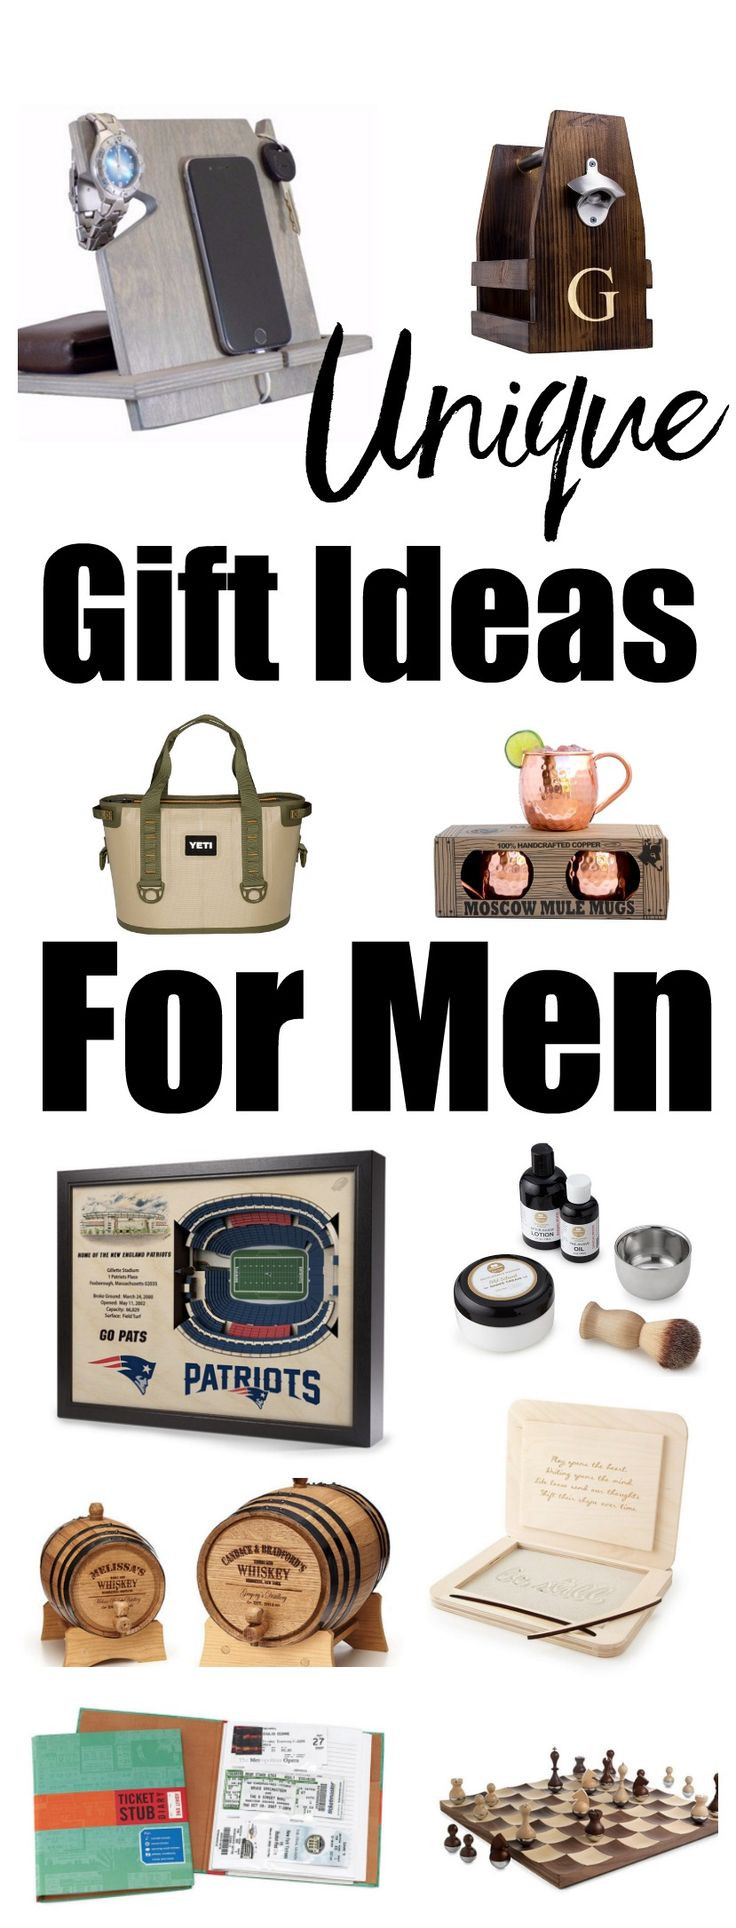 Best ideas about Unique Gift Ideas For Men
. Save or Pin Unique Gift Ideas for Men Christmas t ideas for men Now.